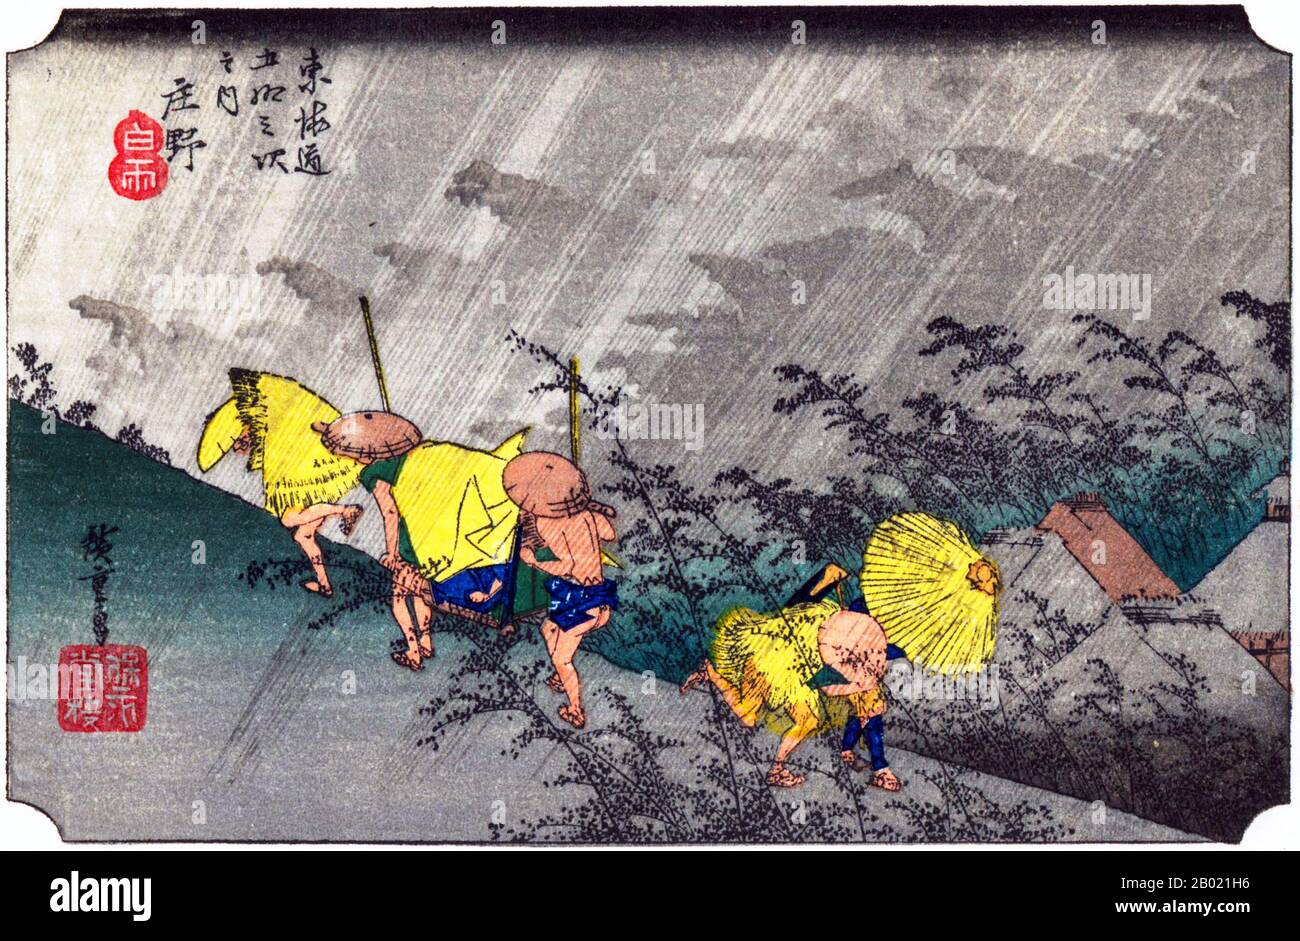 Shono: Tormenta en las montañas; frialitas llevando un kago, con una capa de paja arrojada sobre él, subiendo la colina, y otros dos, uno con un paraguas, corriendo hacia abajo. Utagawa Hiroshige (歌川 広重, 1797 – 12 de octubre de 1858) fue un artista ukiyo-e japonés, y uno de los últimos grandes artistas de esa tradición. También fue llamado Andō Hiroshige (安藤 広重) (una combinación irregular de apellido y nombre artístico) y por el nombre artístico de Ichiyūsai Hiroshige (一幽斎廣重). La Tōkaidō (carretera del Mar este de 東海道) fue la más importante de las Cinco rutas del período Edo, conectando Edo (Tokio moderno) con Kioto en Japón. U Foto de stock